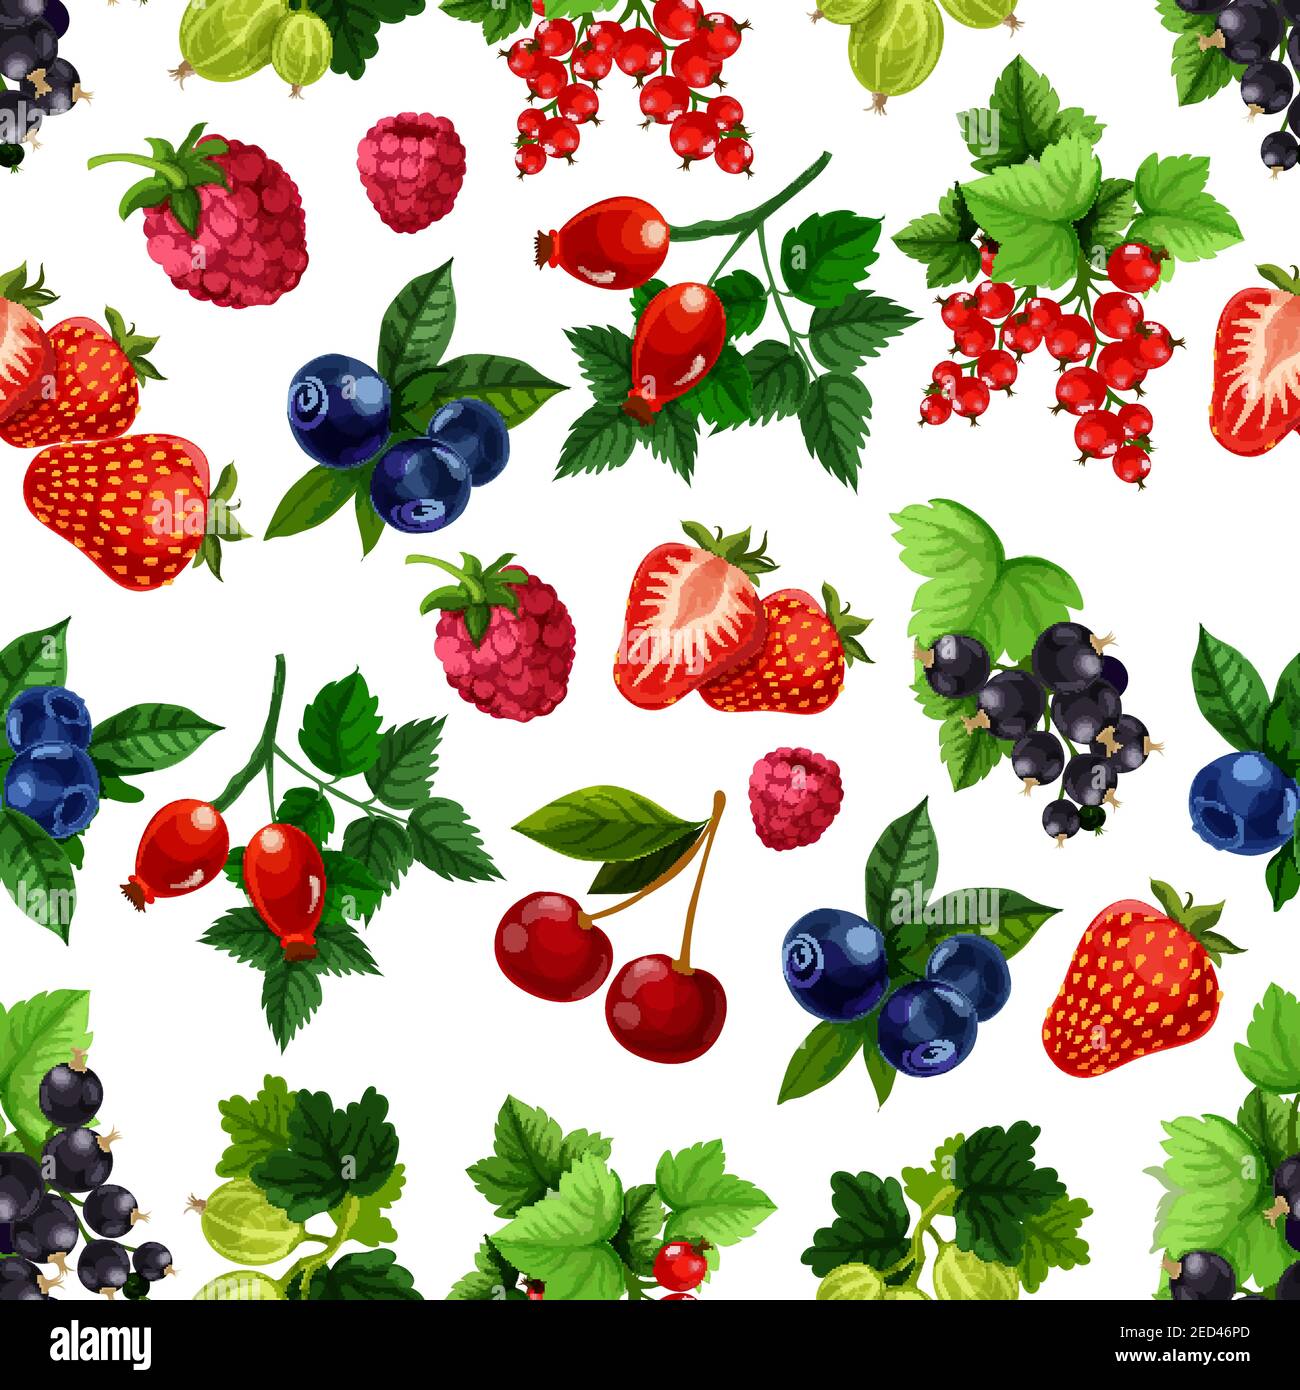 Beeren Früchte Muster. Vektor nahtlose Hintergrund von Erdbeere, Himbeere, Heidelbeere, schwarze Johannisbeere, rote Johannisbeere, Kirsche, Stachelbeere, Briar-Beerenbrötchen Stock Vektor